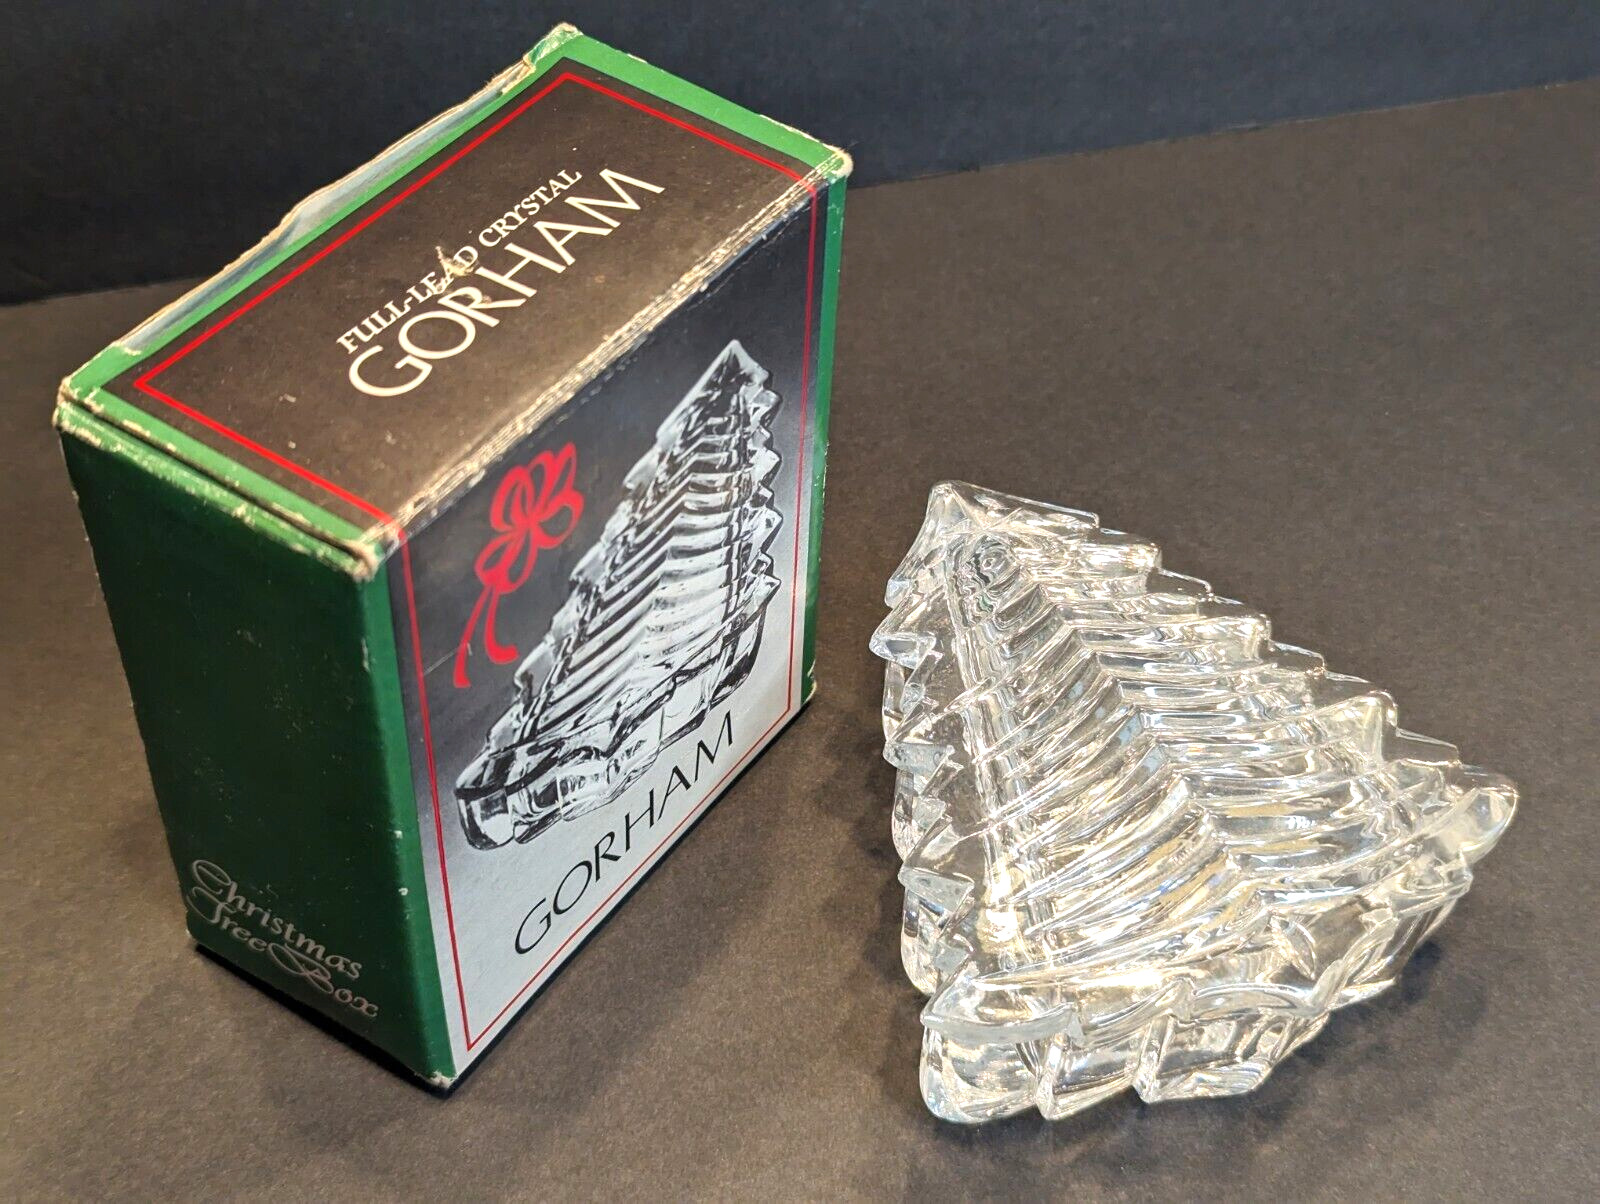 Vtg Gorham Crystal Christmas Tree Box Full Lead C540 Germany w/Original Box